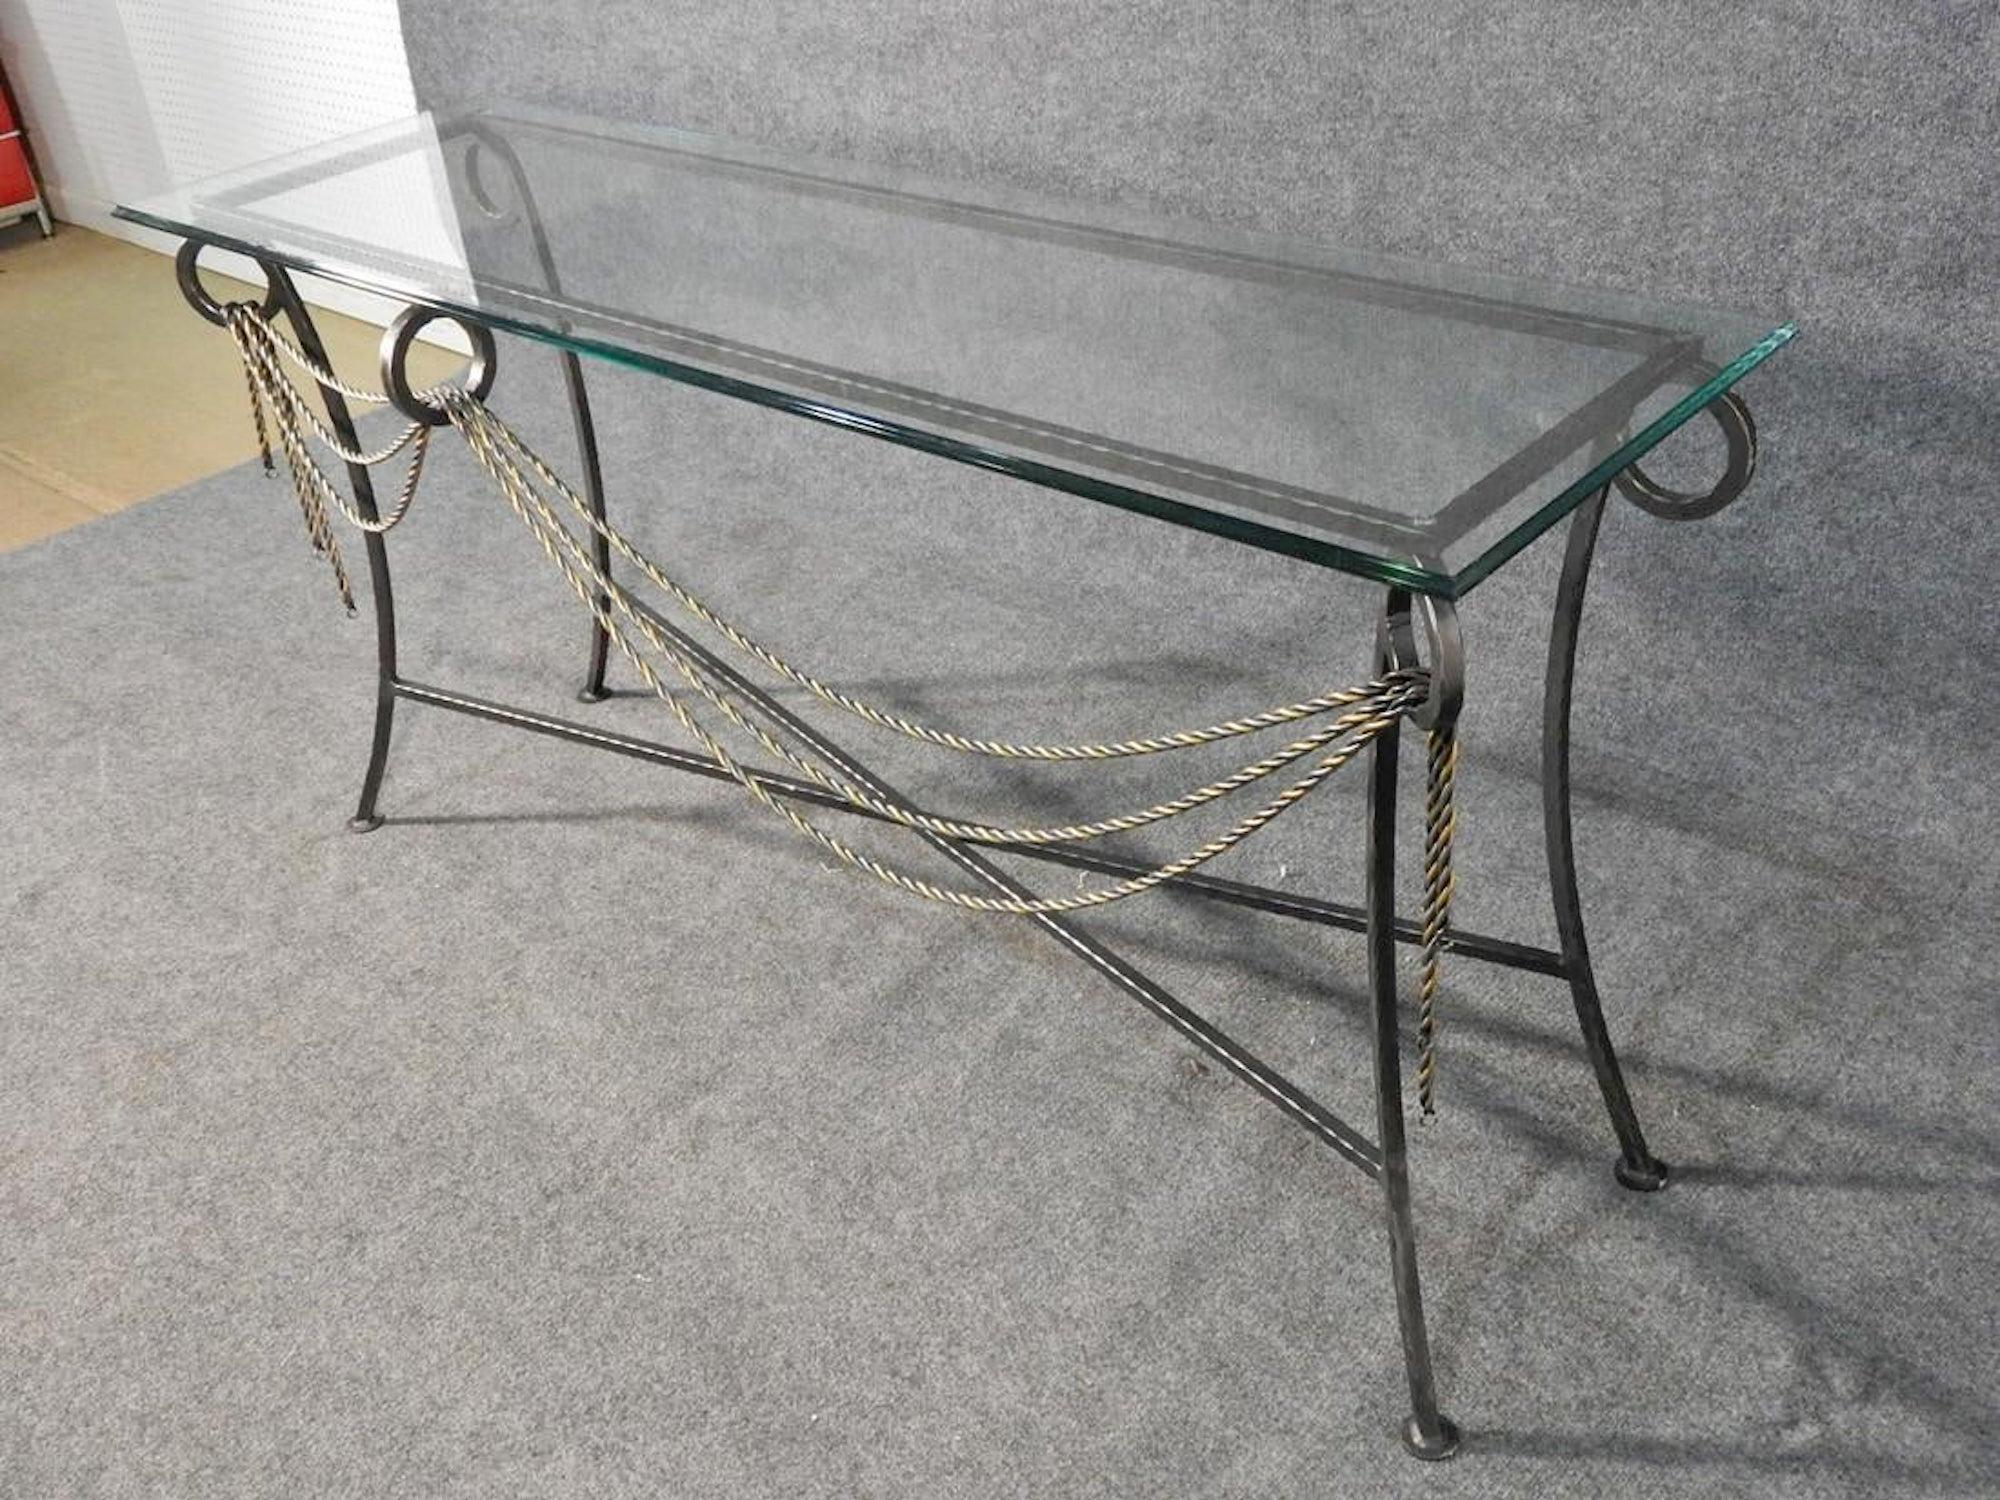 Magnifique table en fer forgé avec plateau en verre et accents en fer tordu.
(Veuillez confirmer l'emplacement de l'article - NY ou NJ - avec le concessionnaire).
 